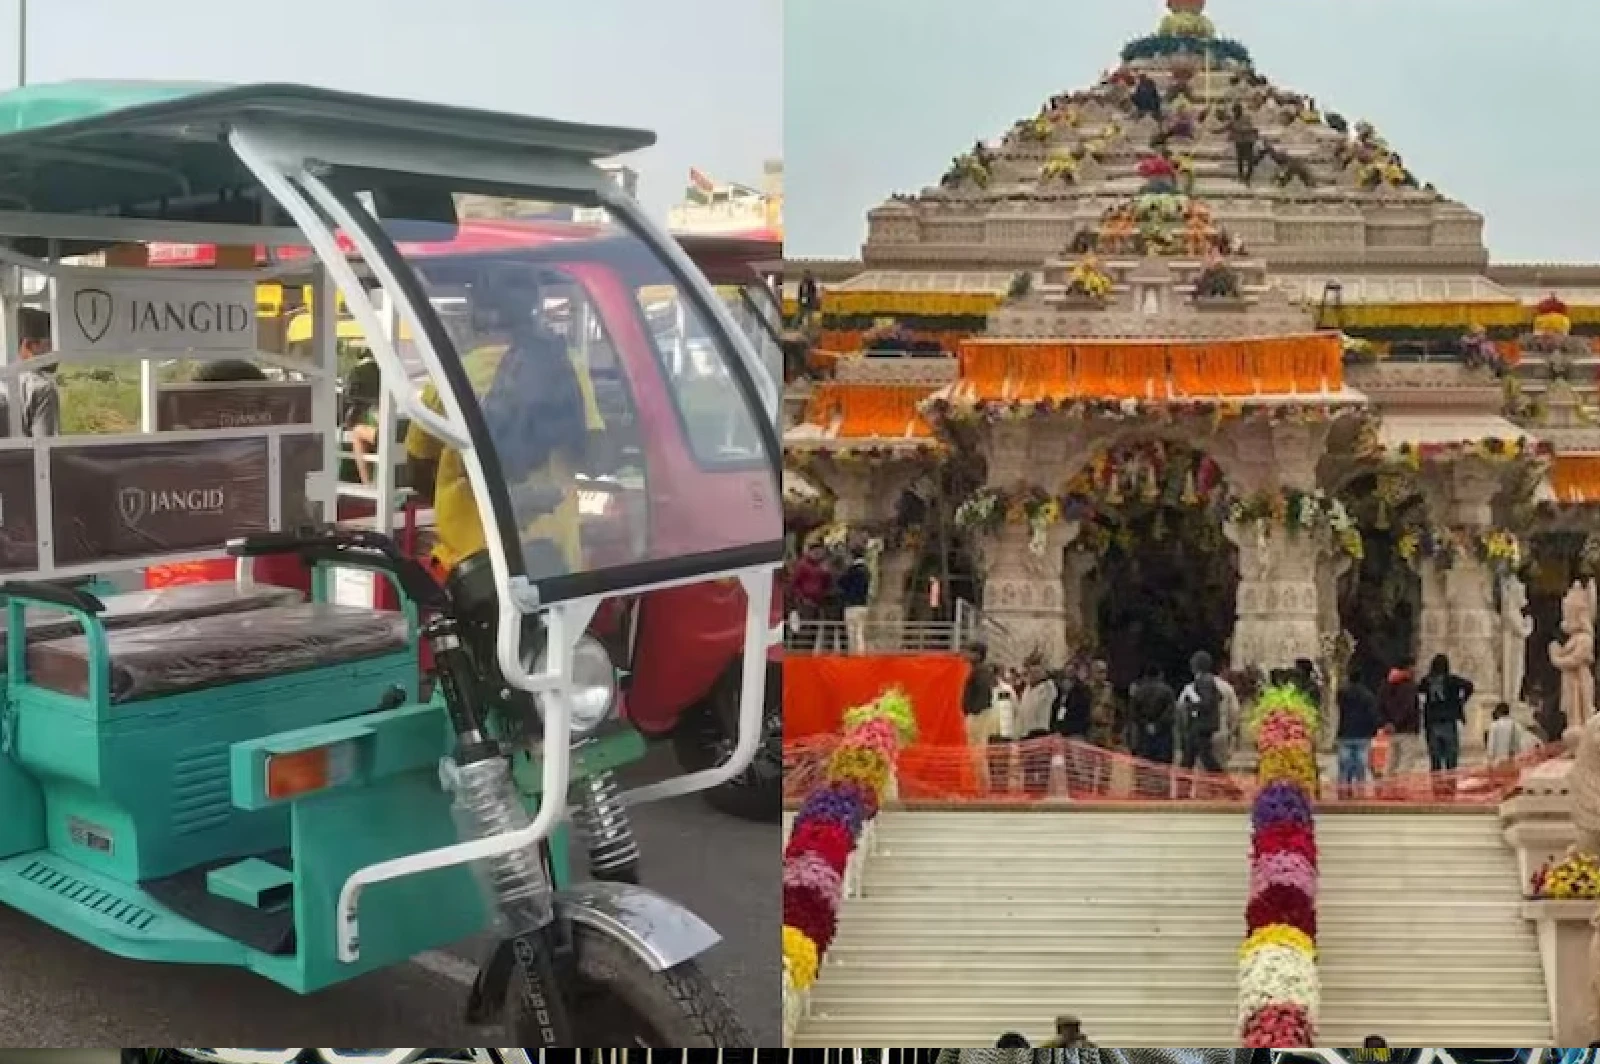 Ayodhya's e-rickshaw